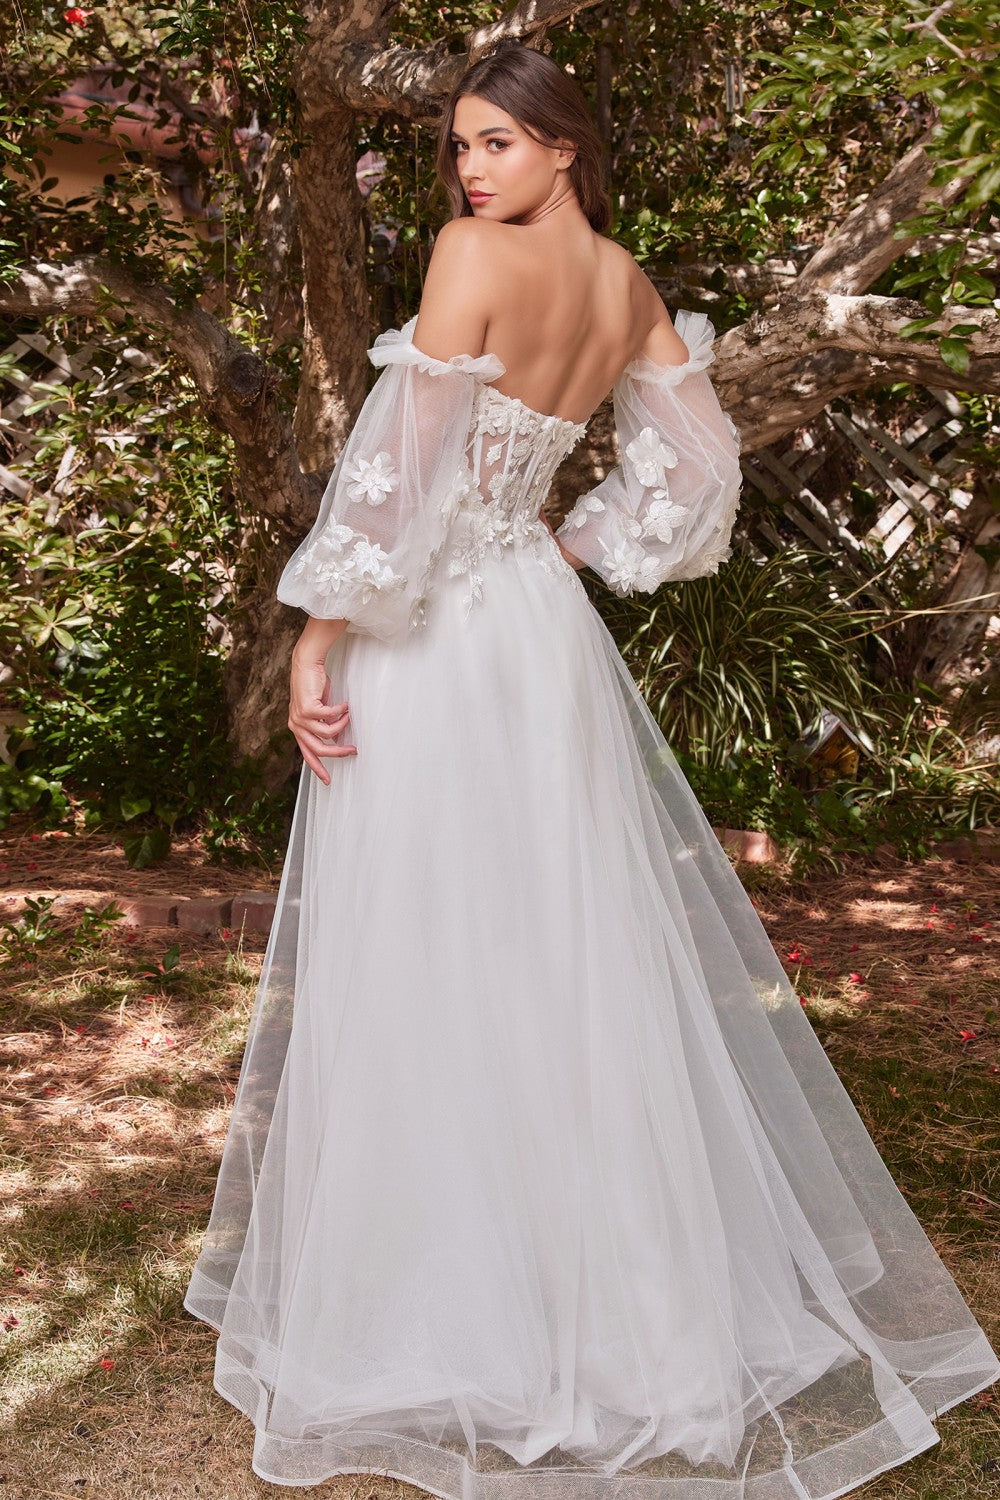 Lace Vintage Sweet Princess Style Strapless Off Shoulder Wedding & Bride Gown 3D Floral Appliqués Romantic Vibes Dress CDCD962W-2